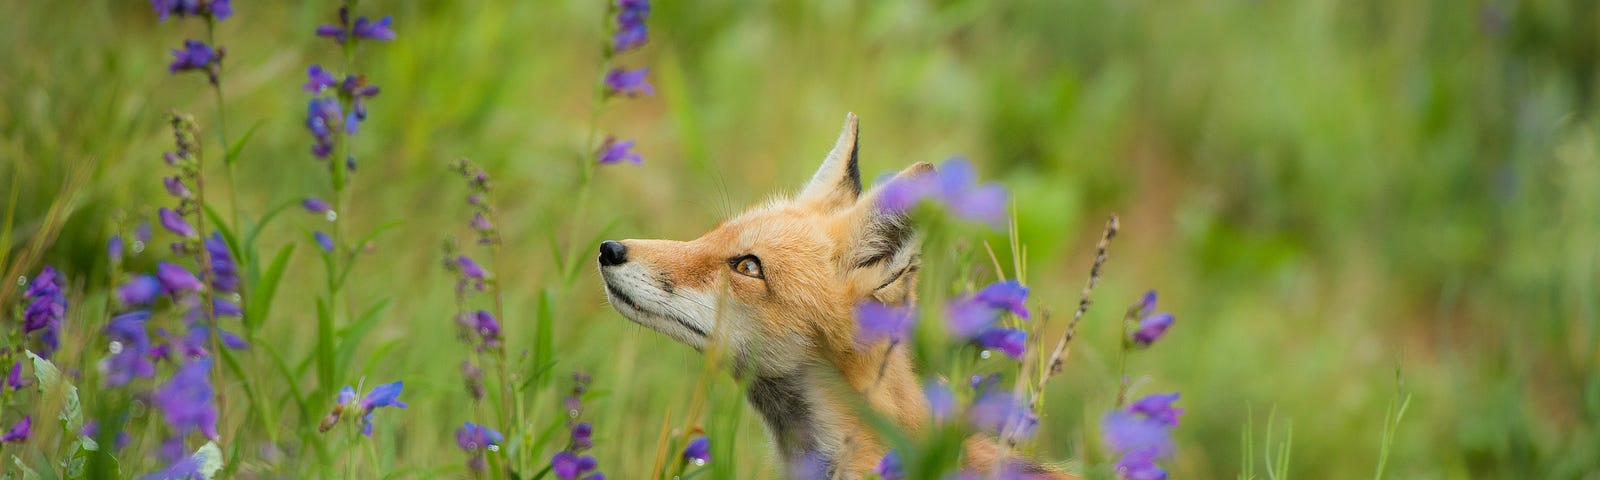 Fox in field of purple flowers